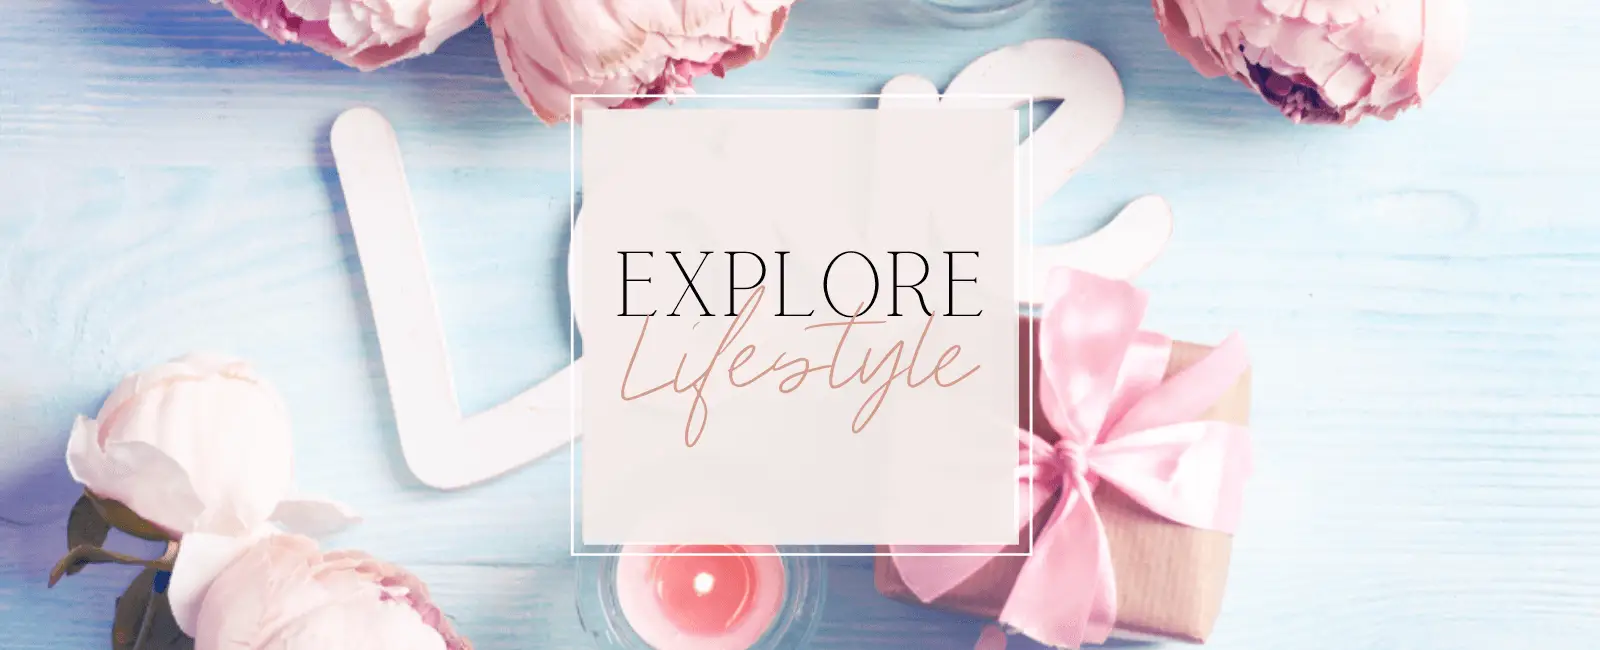 Explore Lifestyle